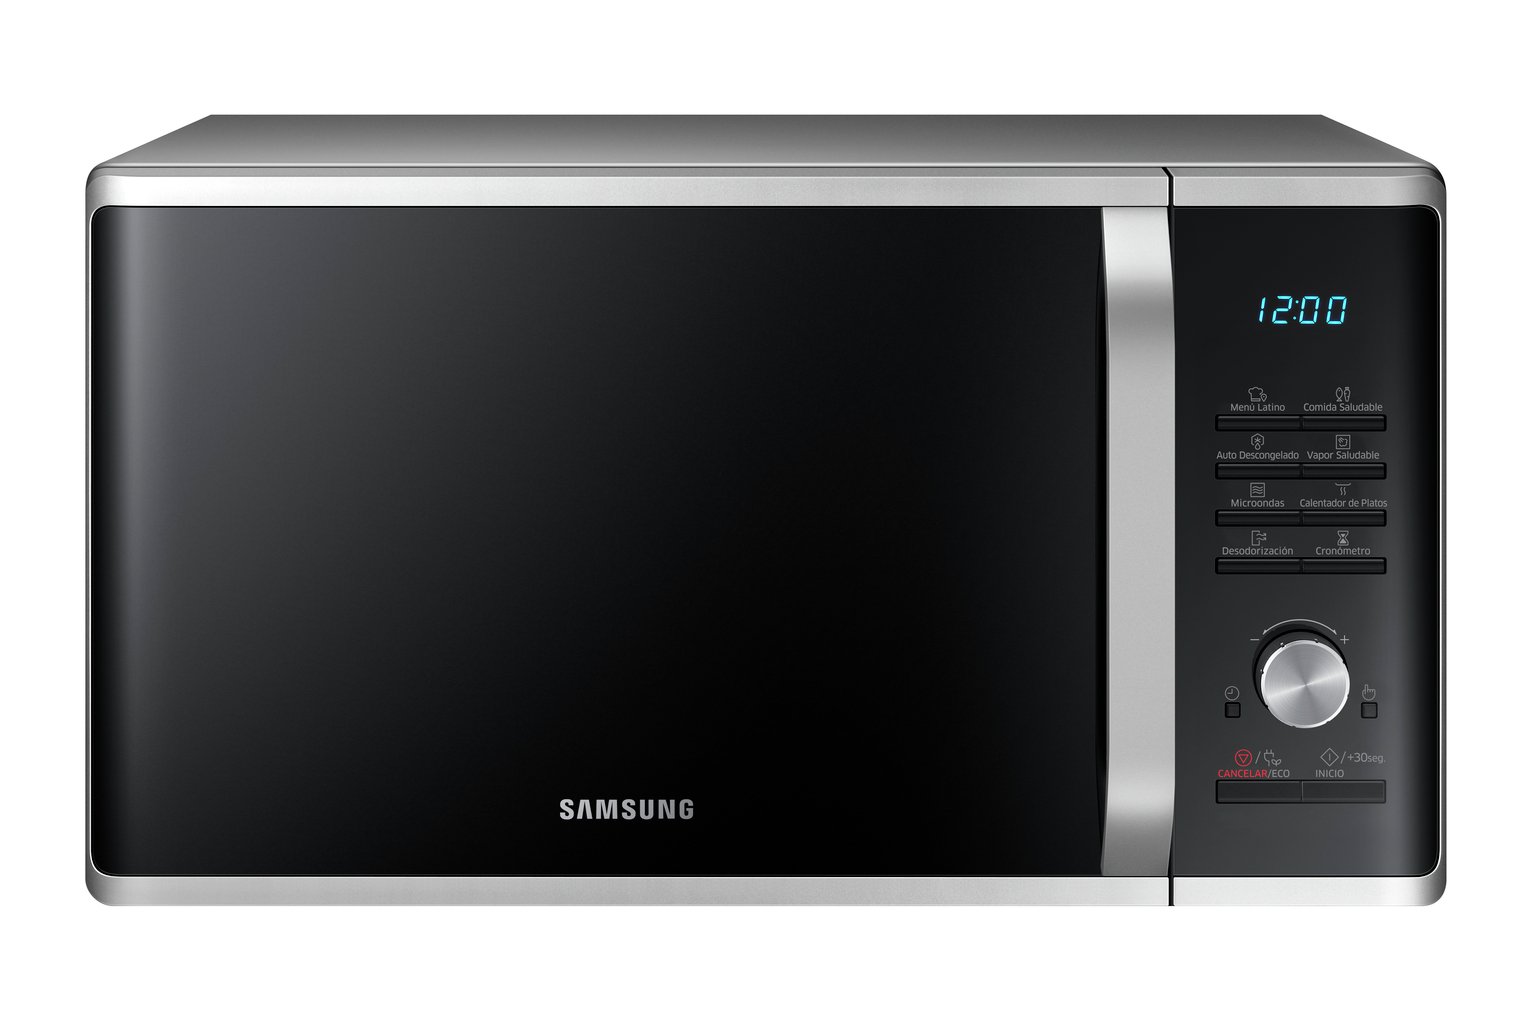 Samsung 1000W 28L Standard Microwave MS28J5255US - Silver